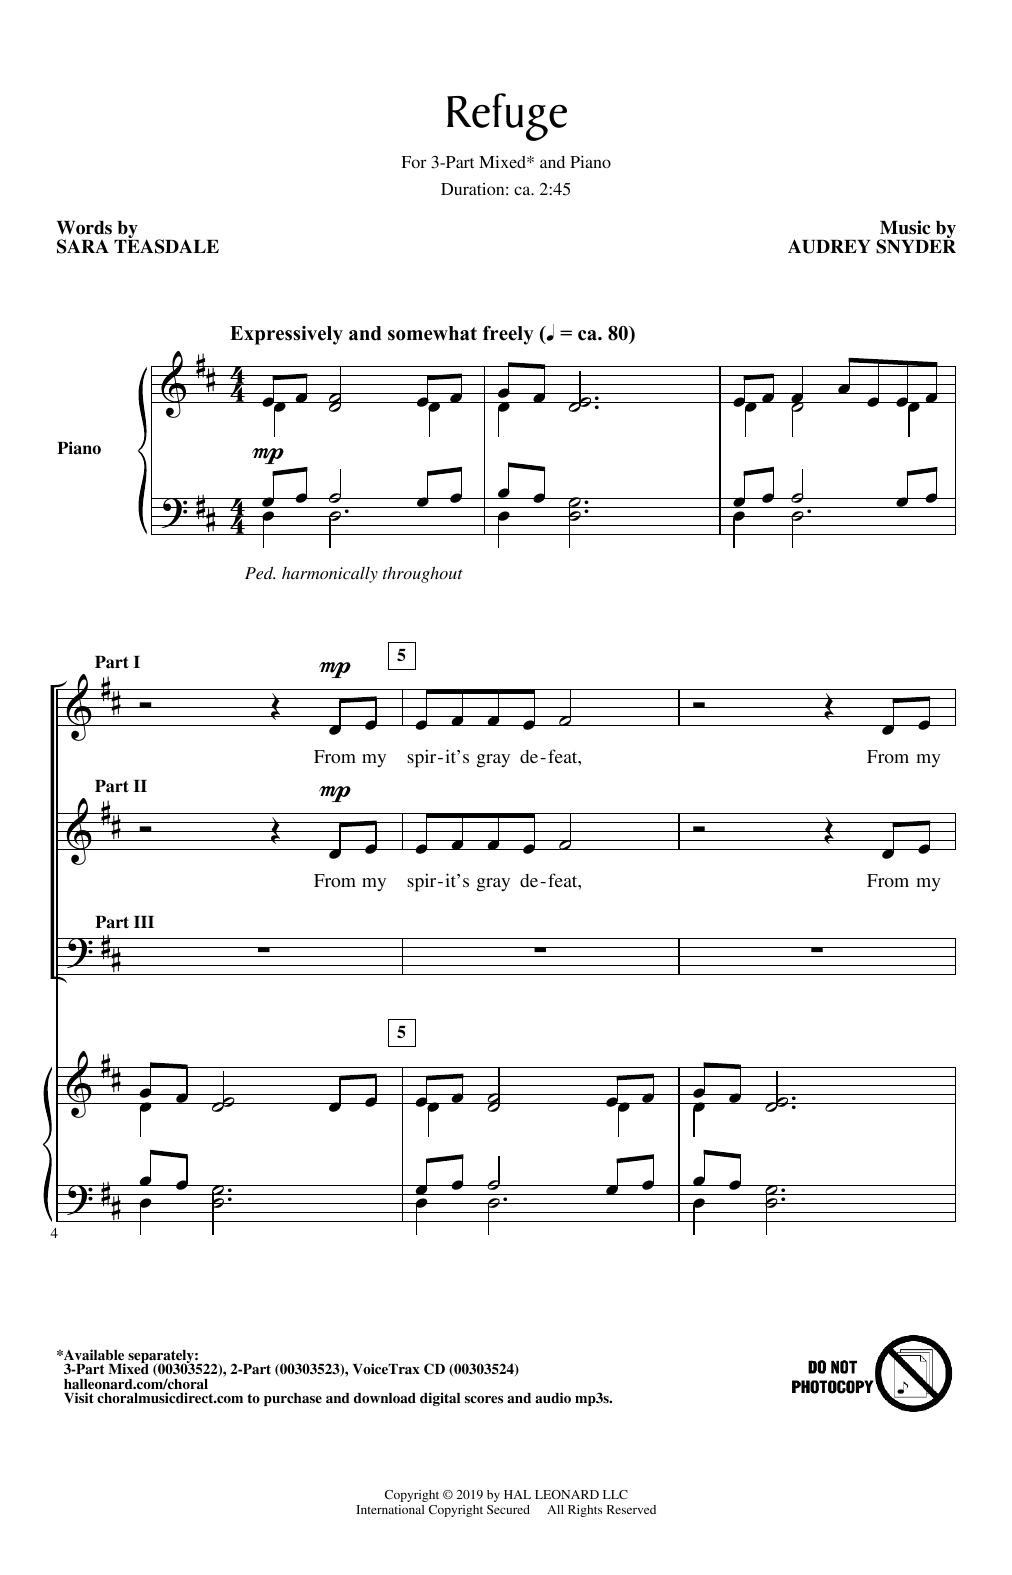 Audrey Snyder Refuge Sheet Music Notes & Chords for 2-Part Choir - Download or Print PDF